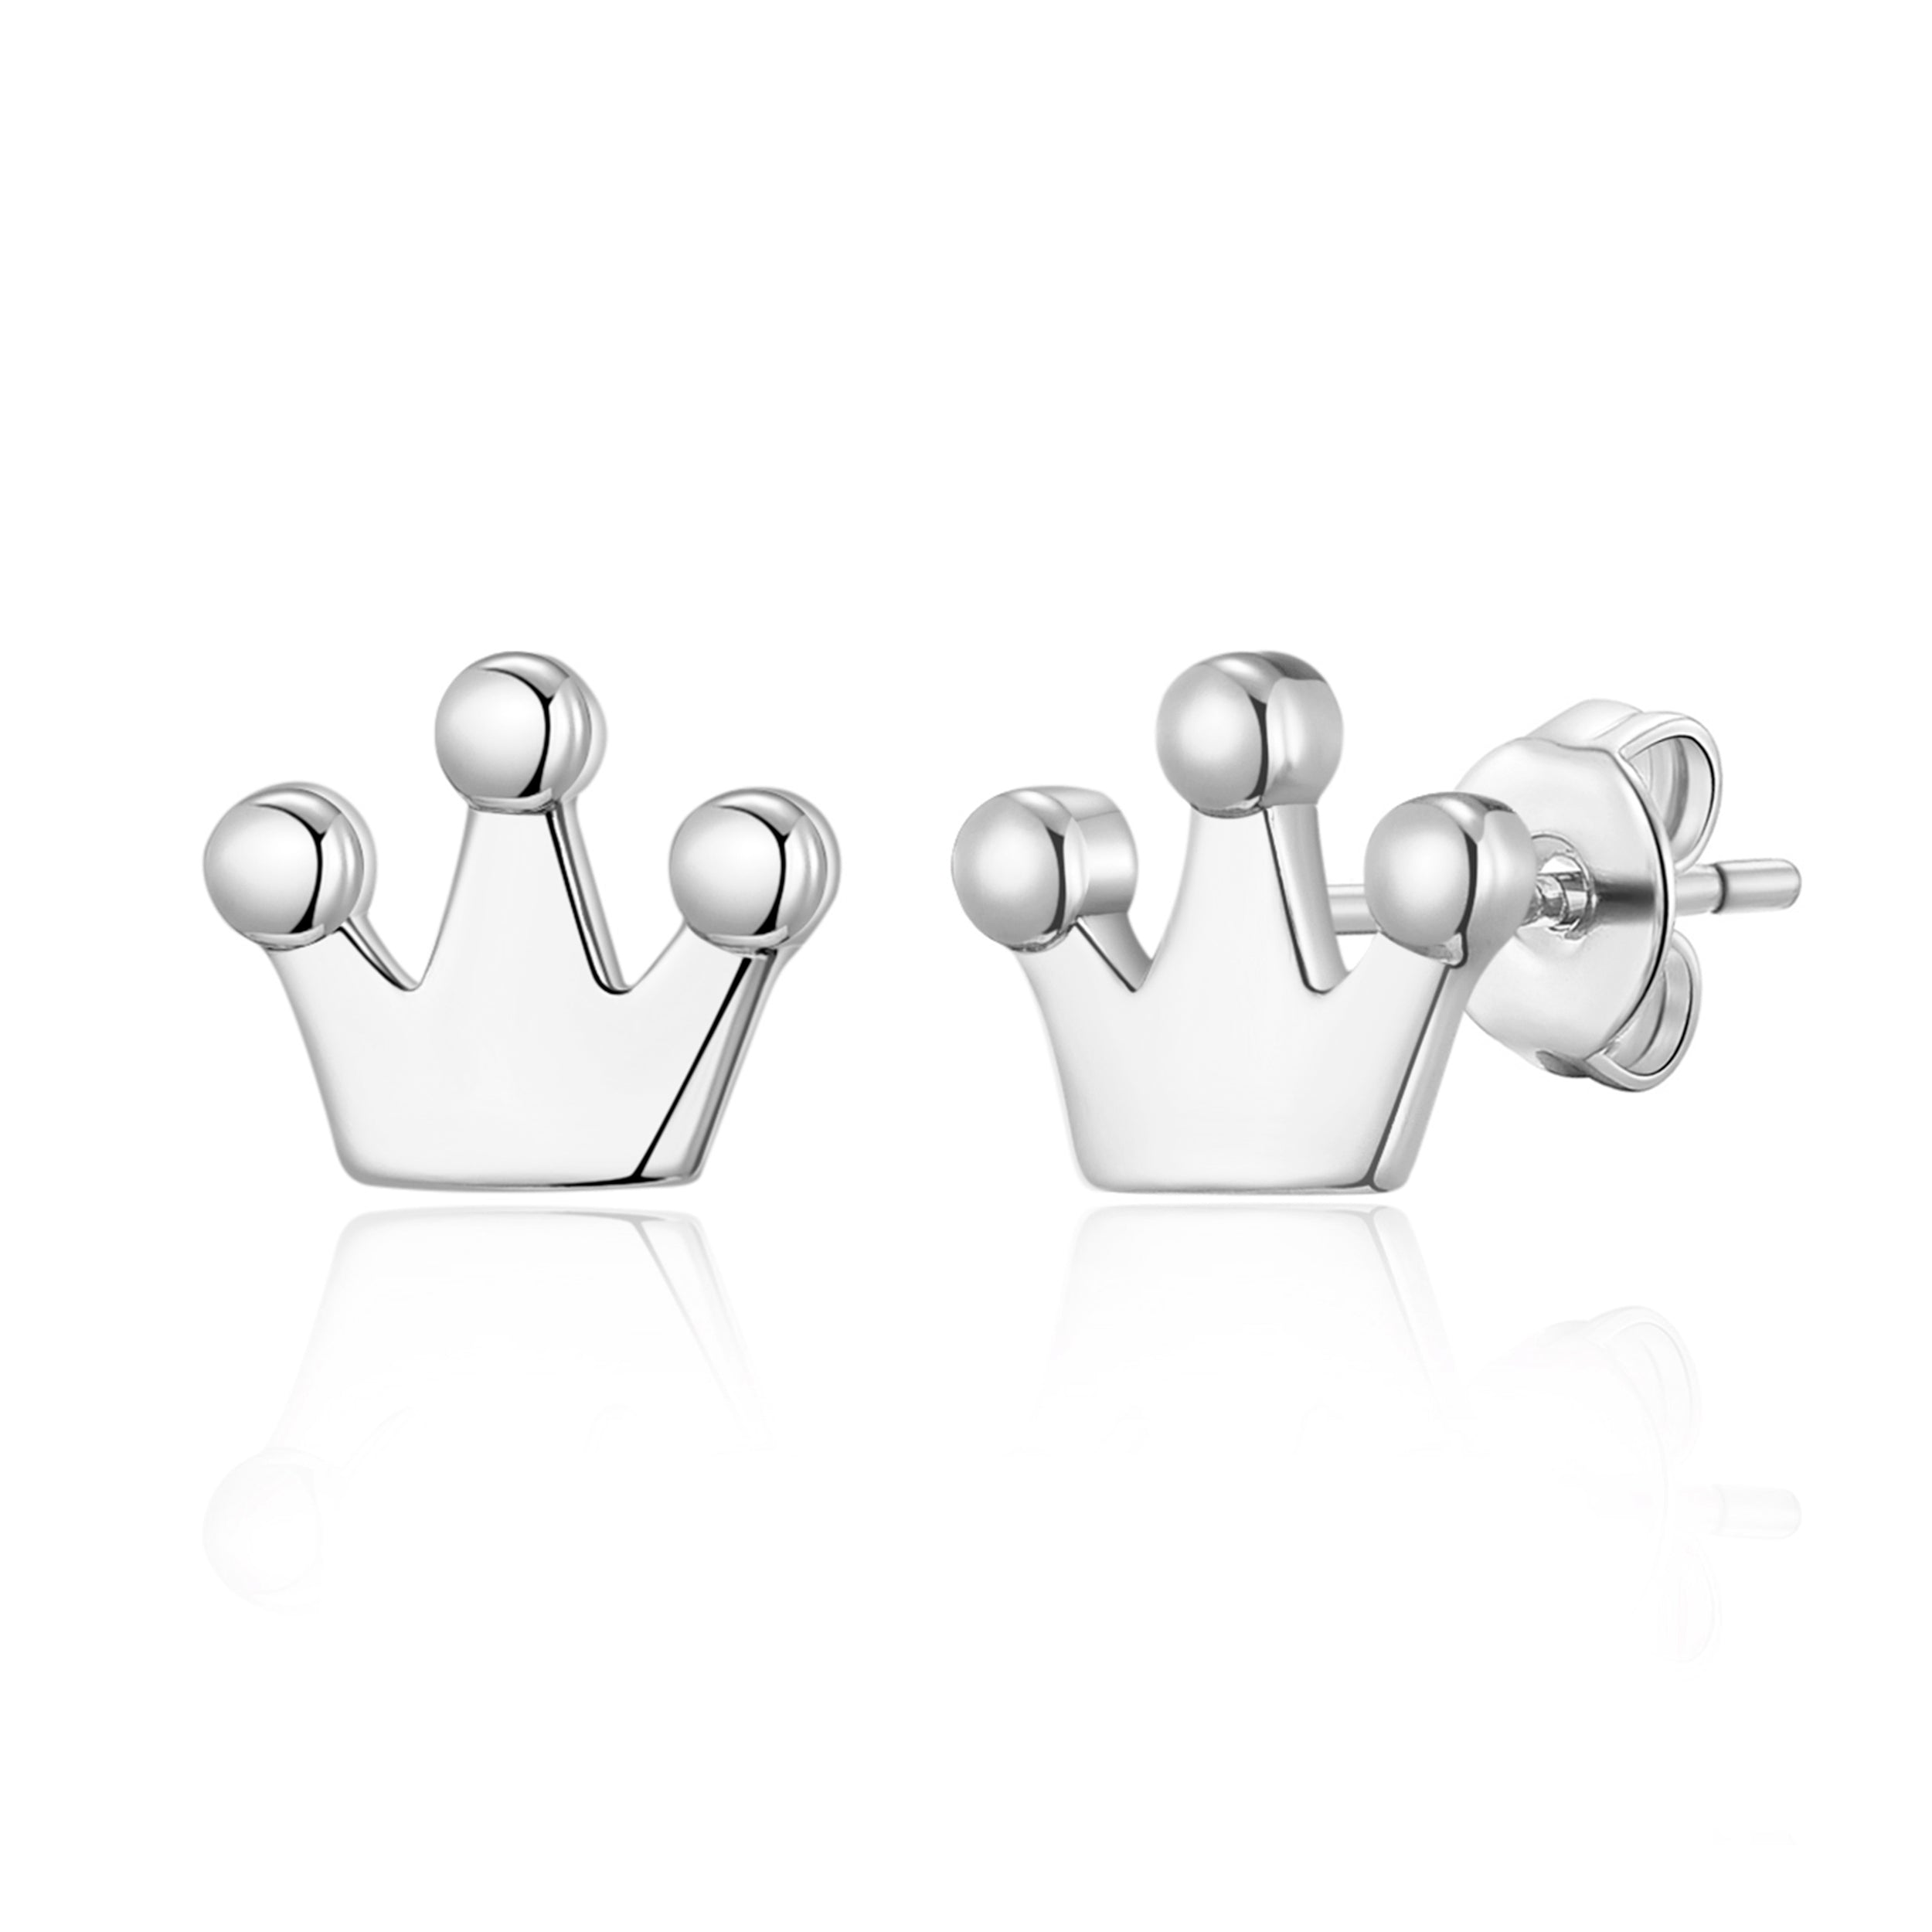 Silver Plated Crown Stud Earrings